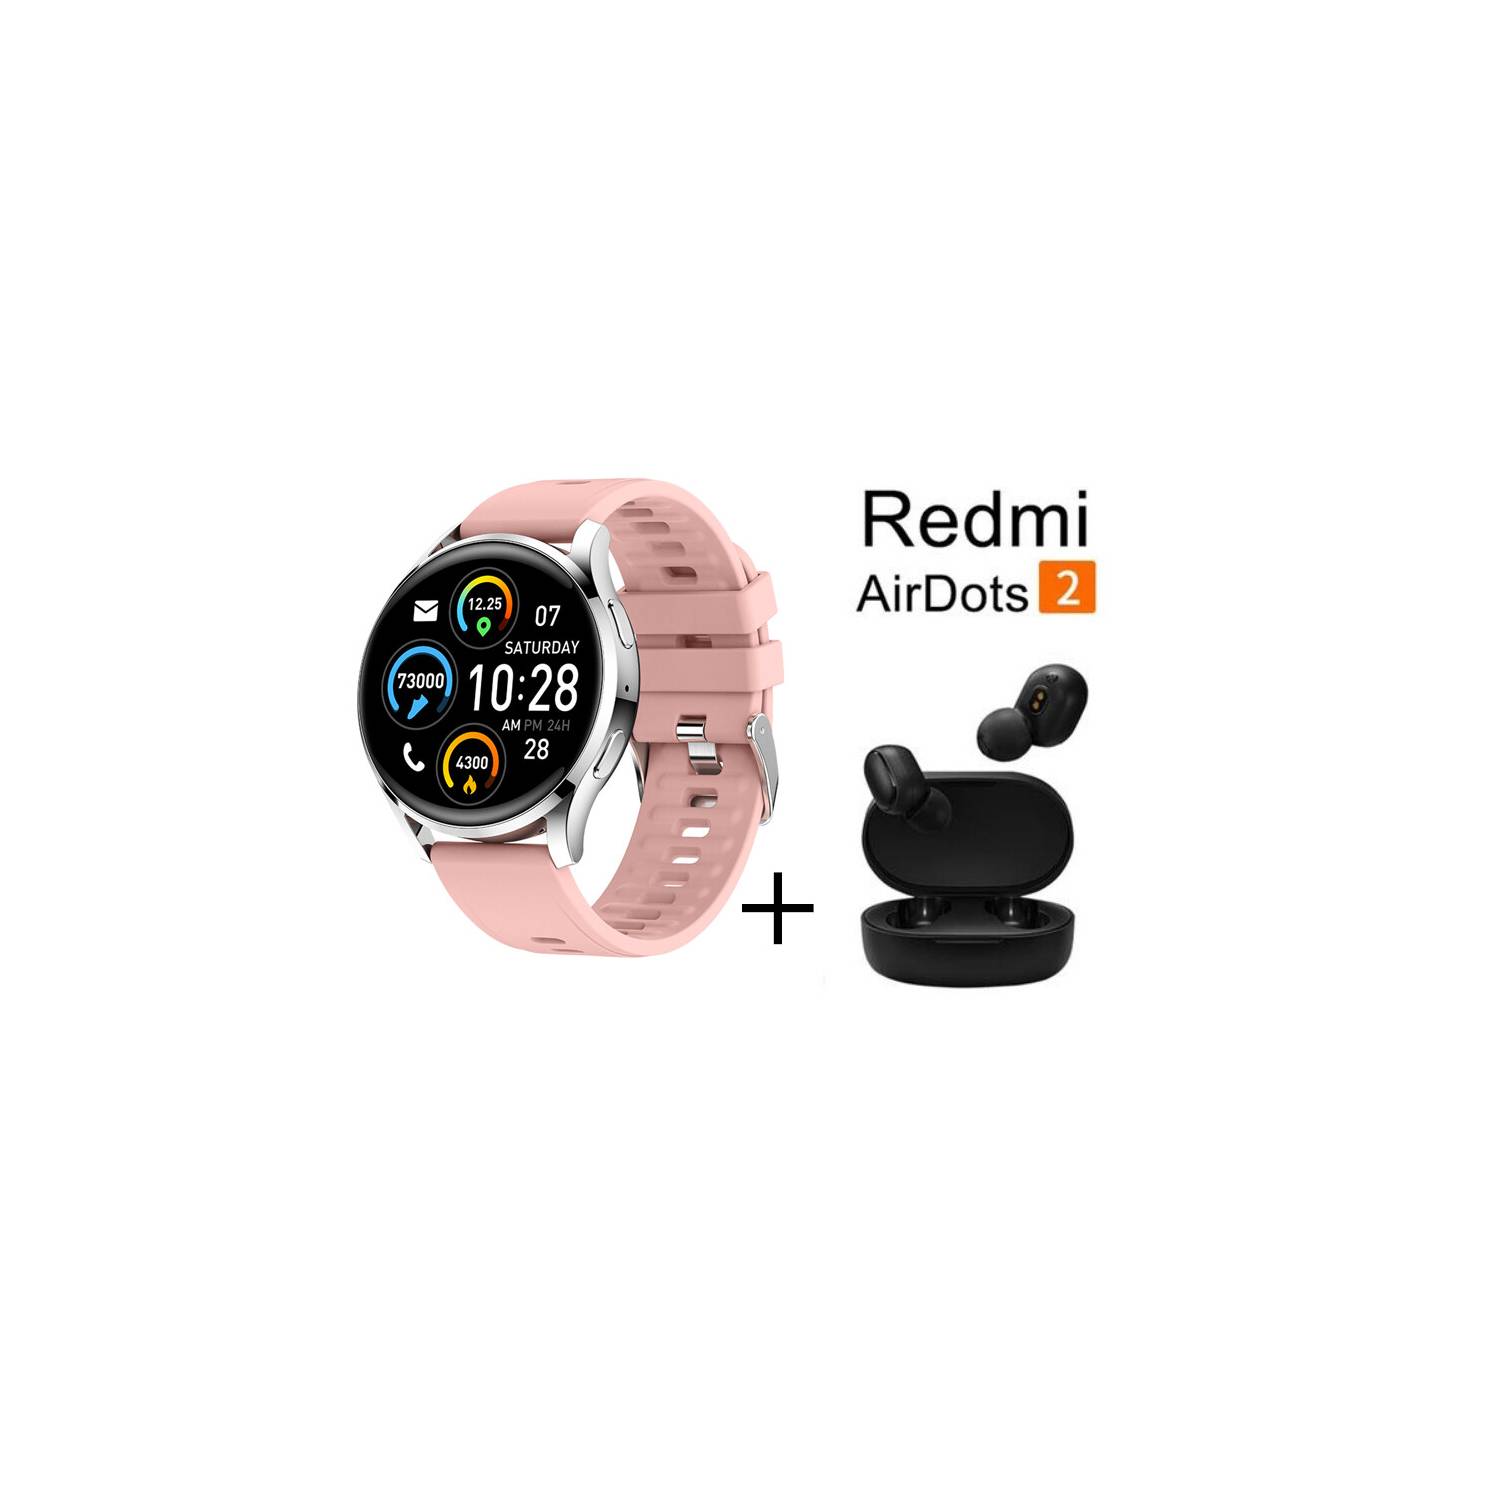 XIAOMI Y9PRO reloj inteligente deportivo + combo Redmi AirDots 2